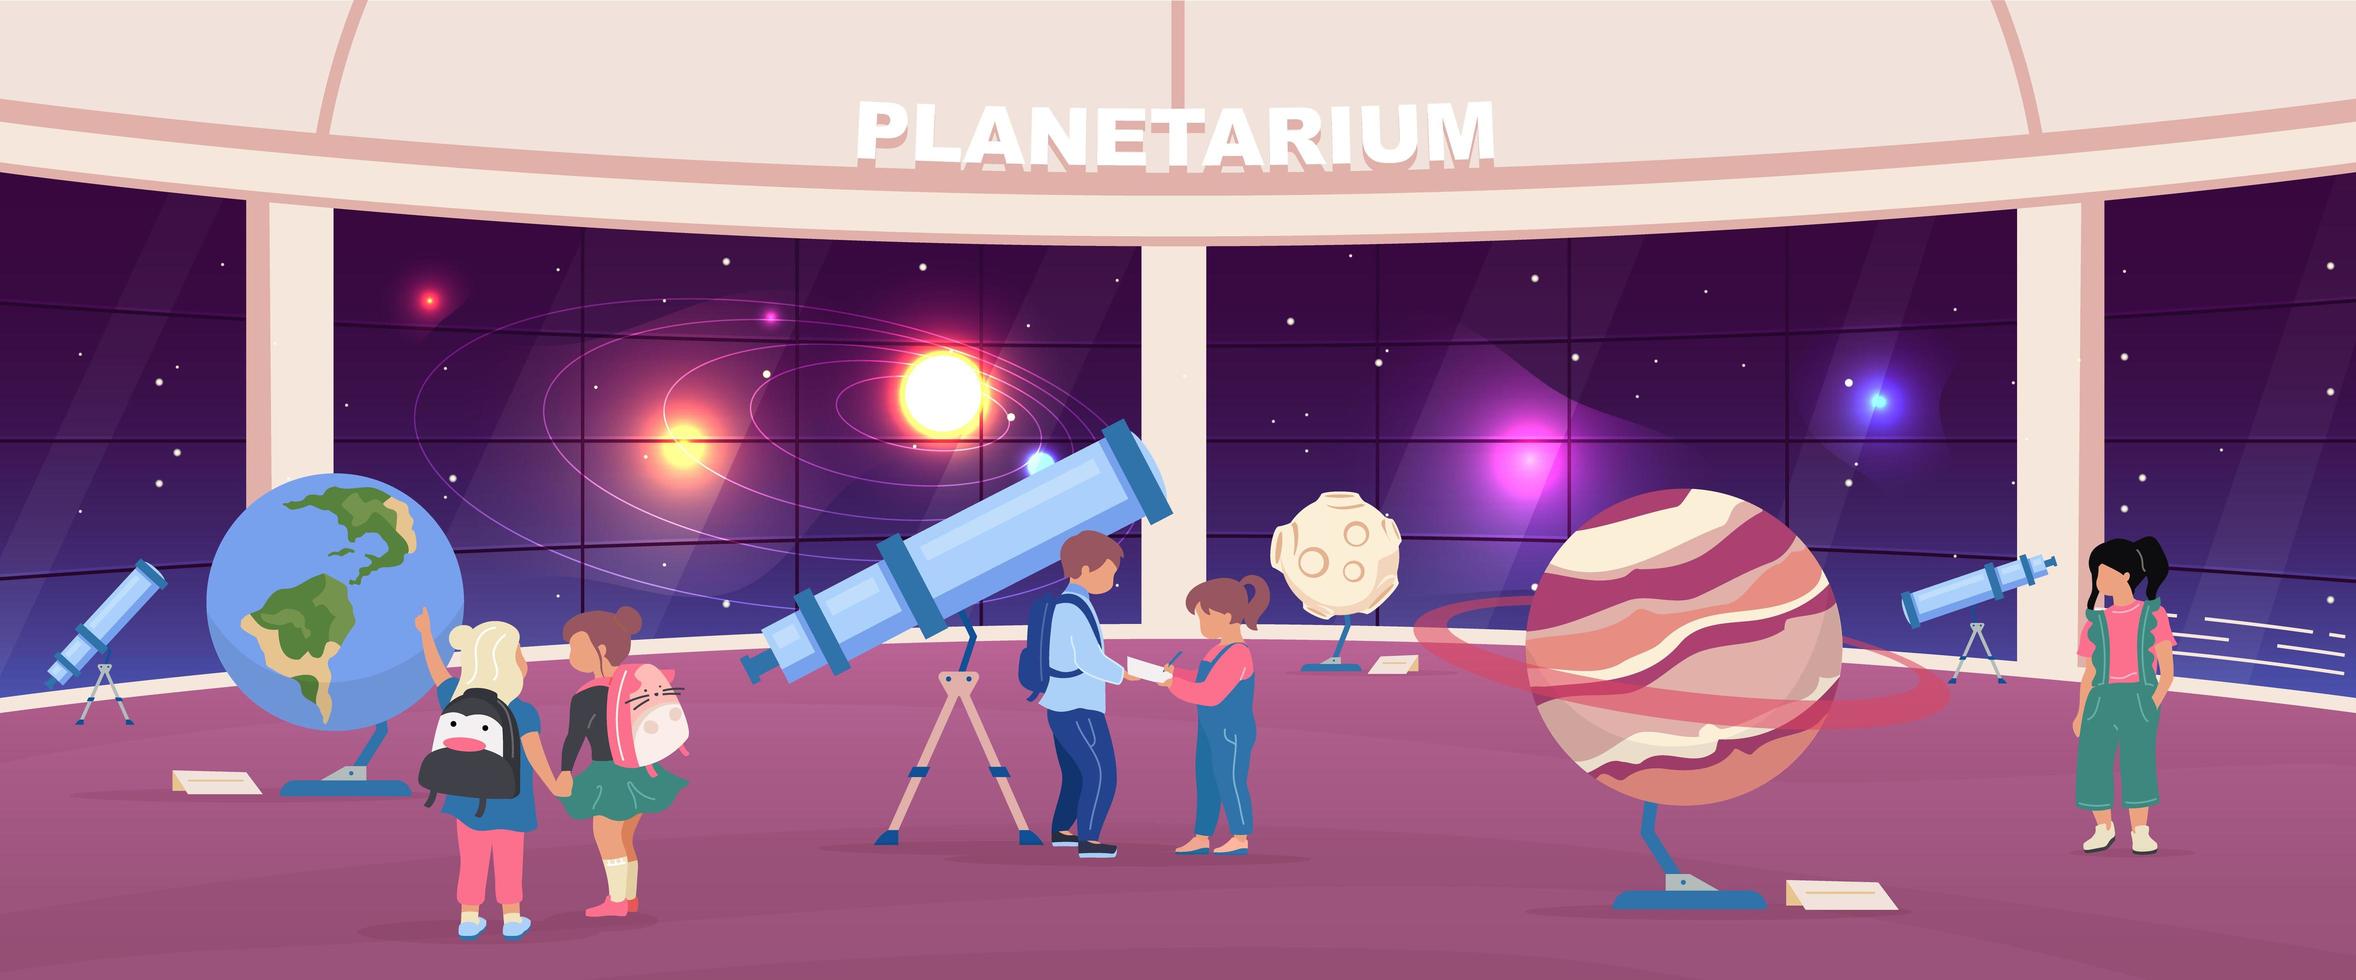 schoolexcursie naar planetarium vector